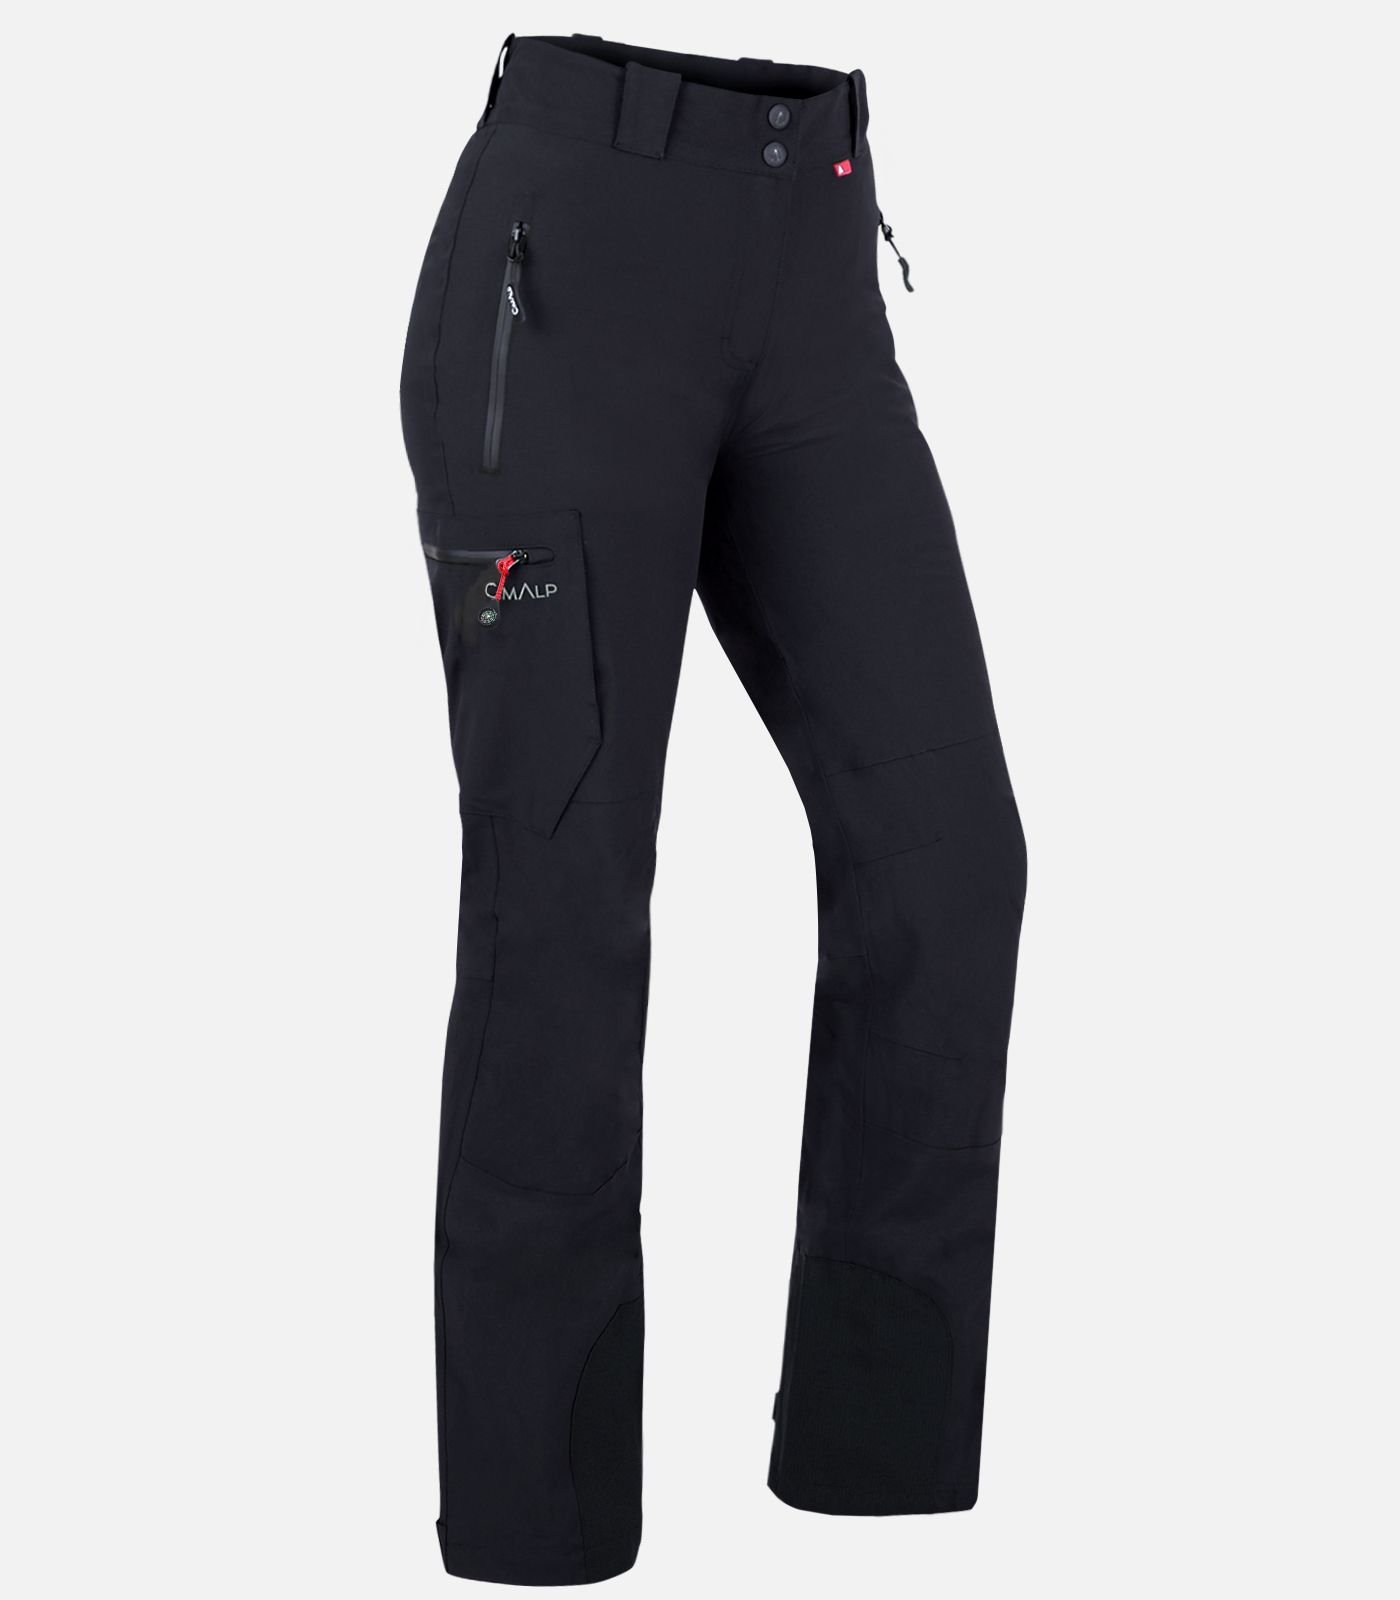 Seeland Larch Stretch Hose - Walking Trousers Women's | Buy online |  Alpinetrek.co.uk